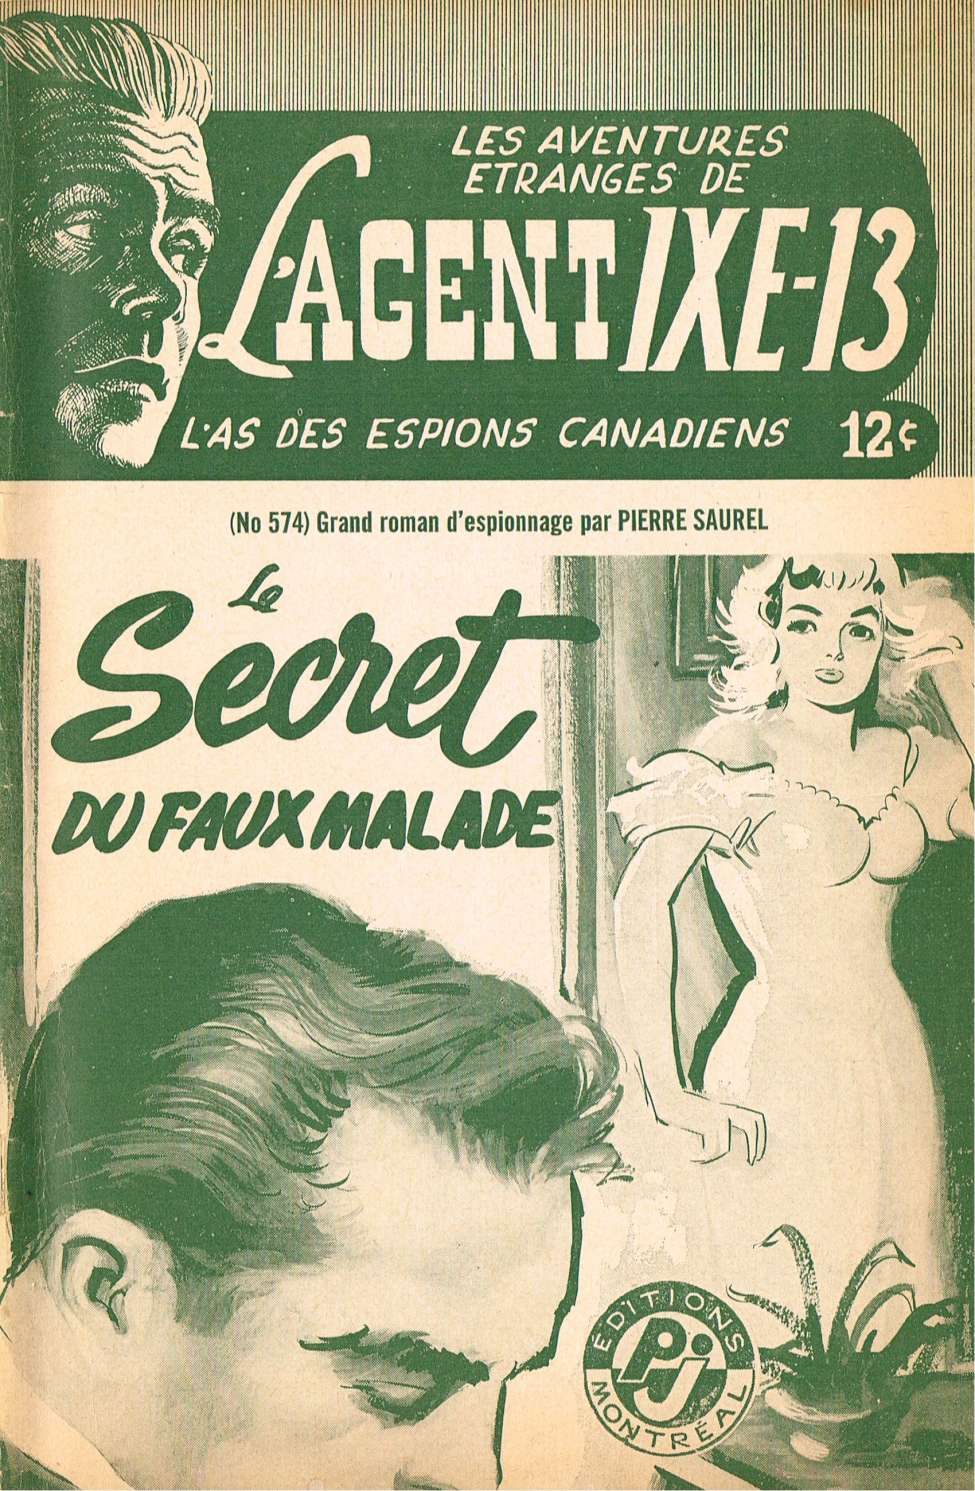 Book Cover For L'Agent IXE-13 v2 574 - Le secret du faux malade